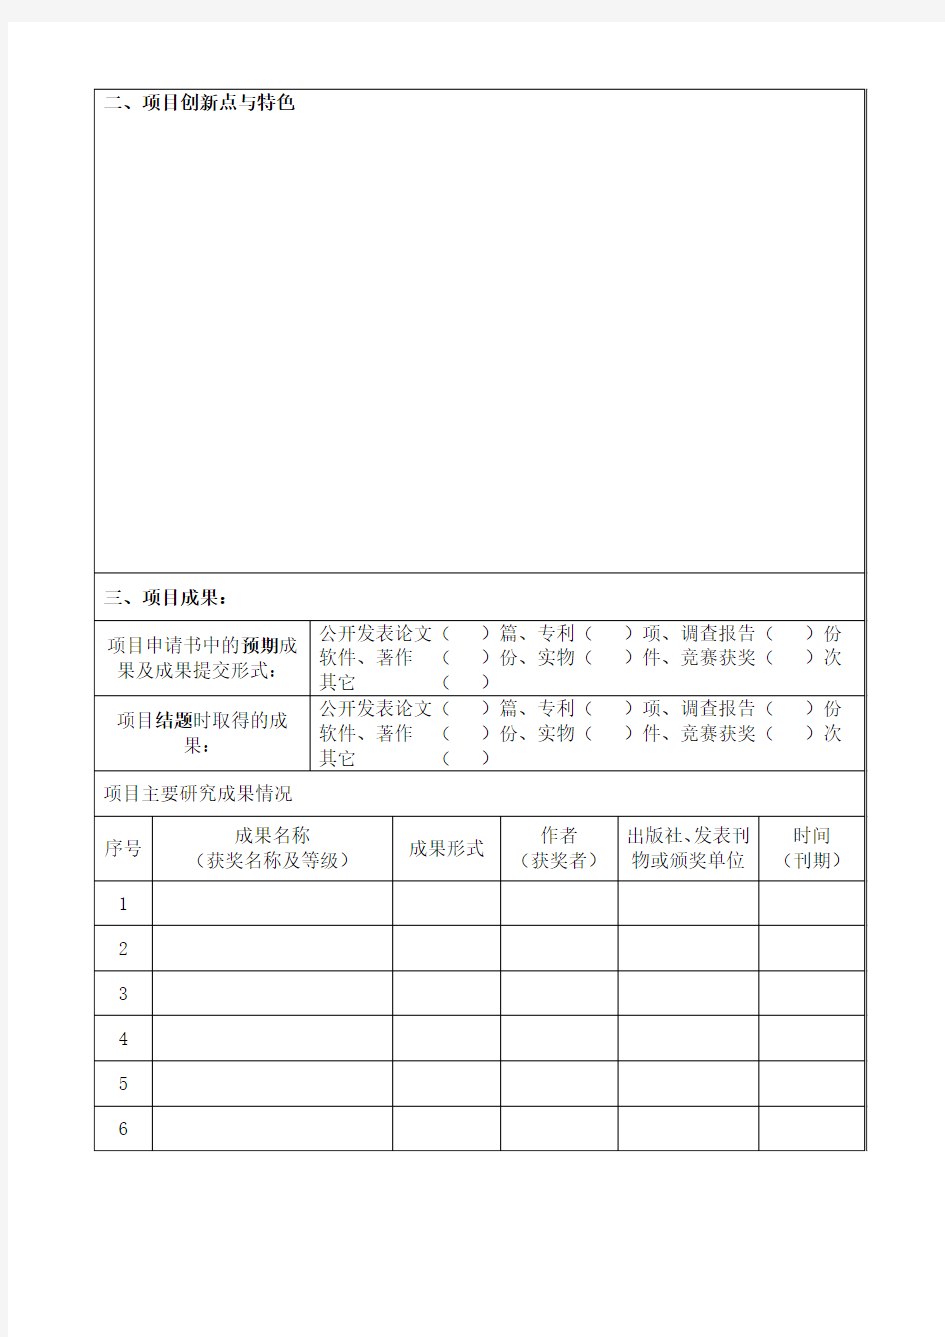 江苏省高等学校大学生创新创业训练计划项目(创新类项目)结题申请书